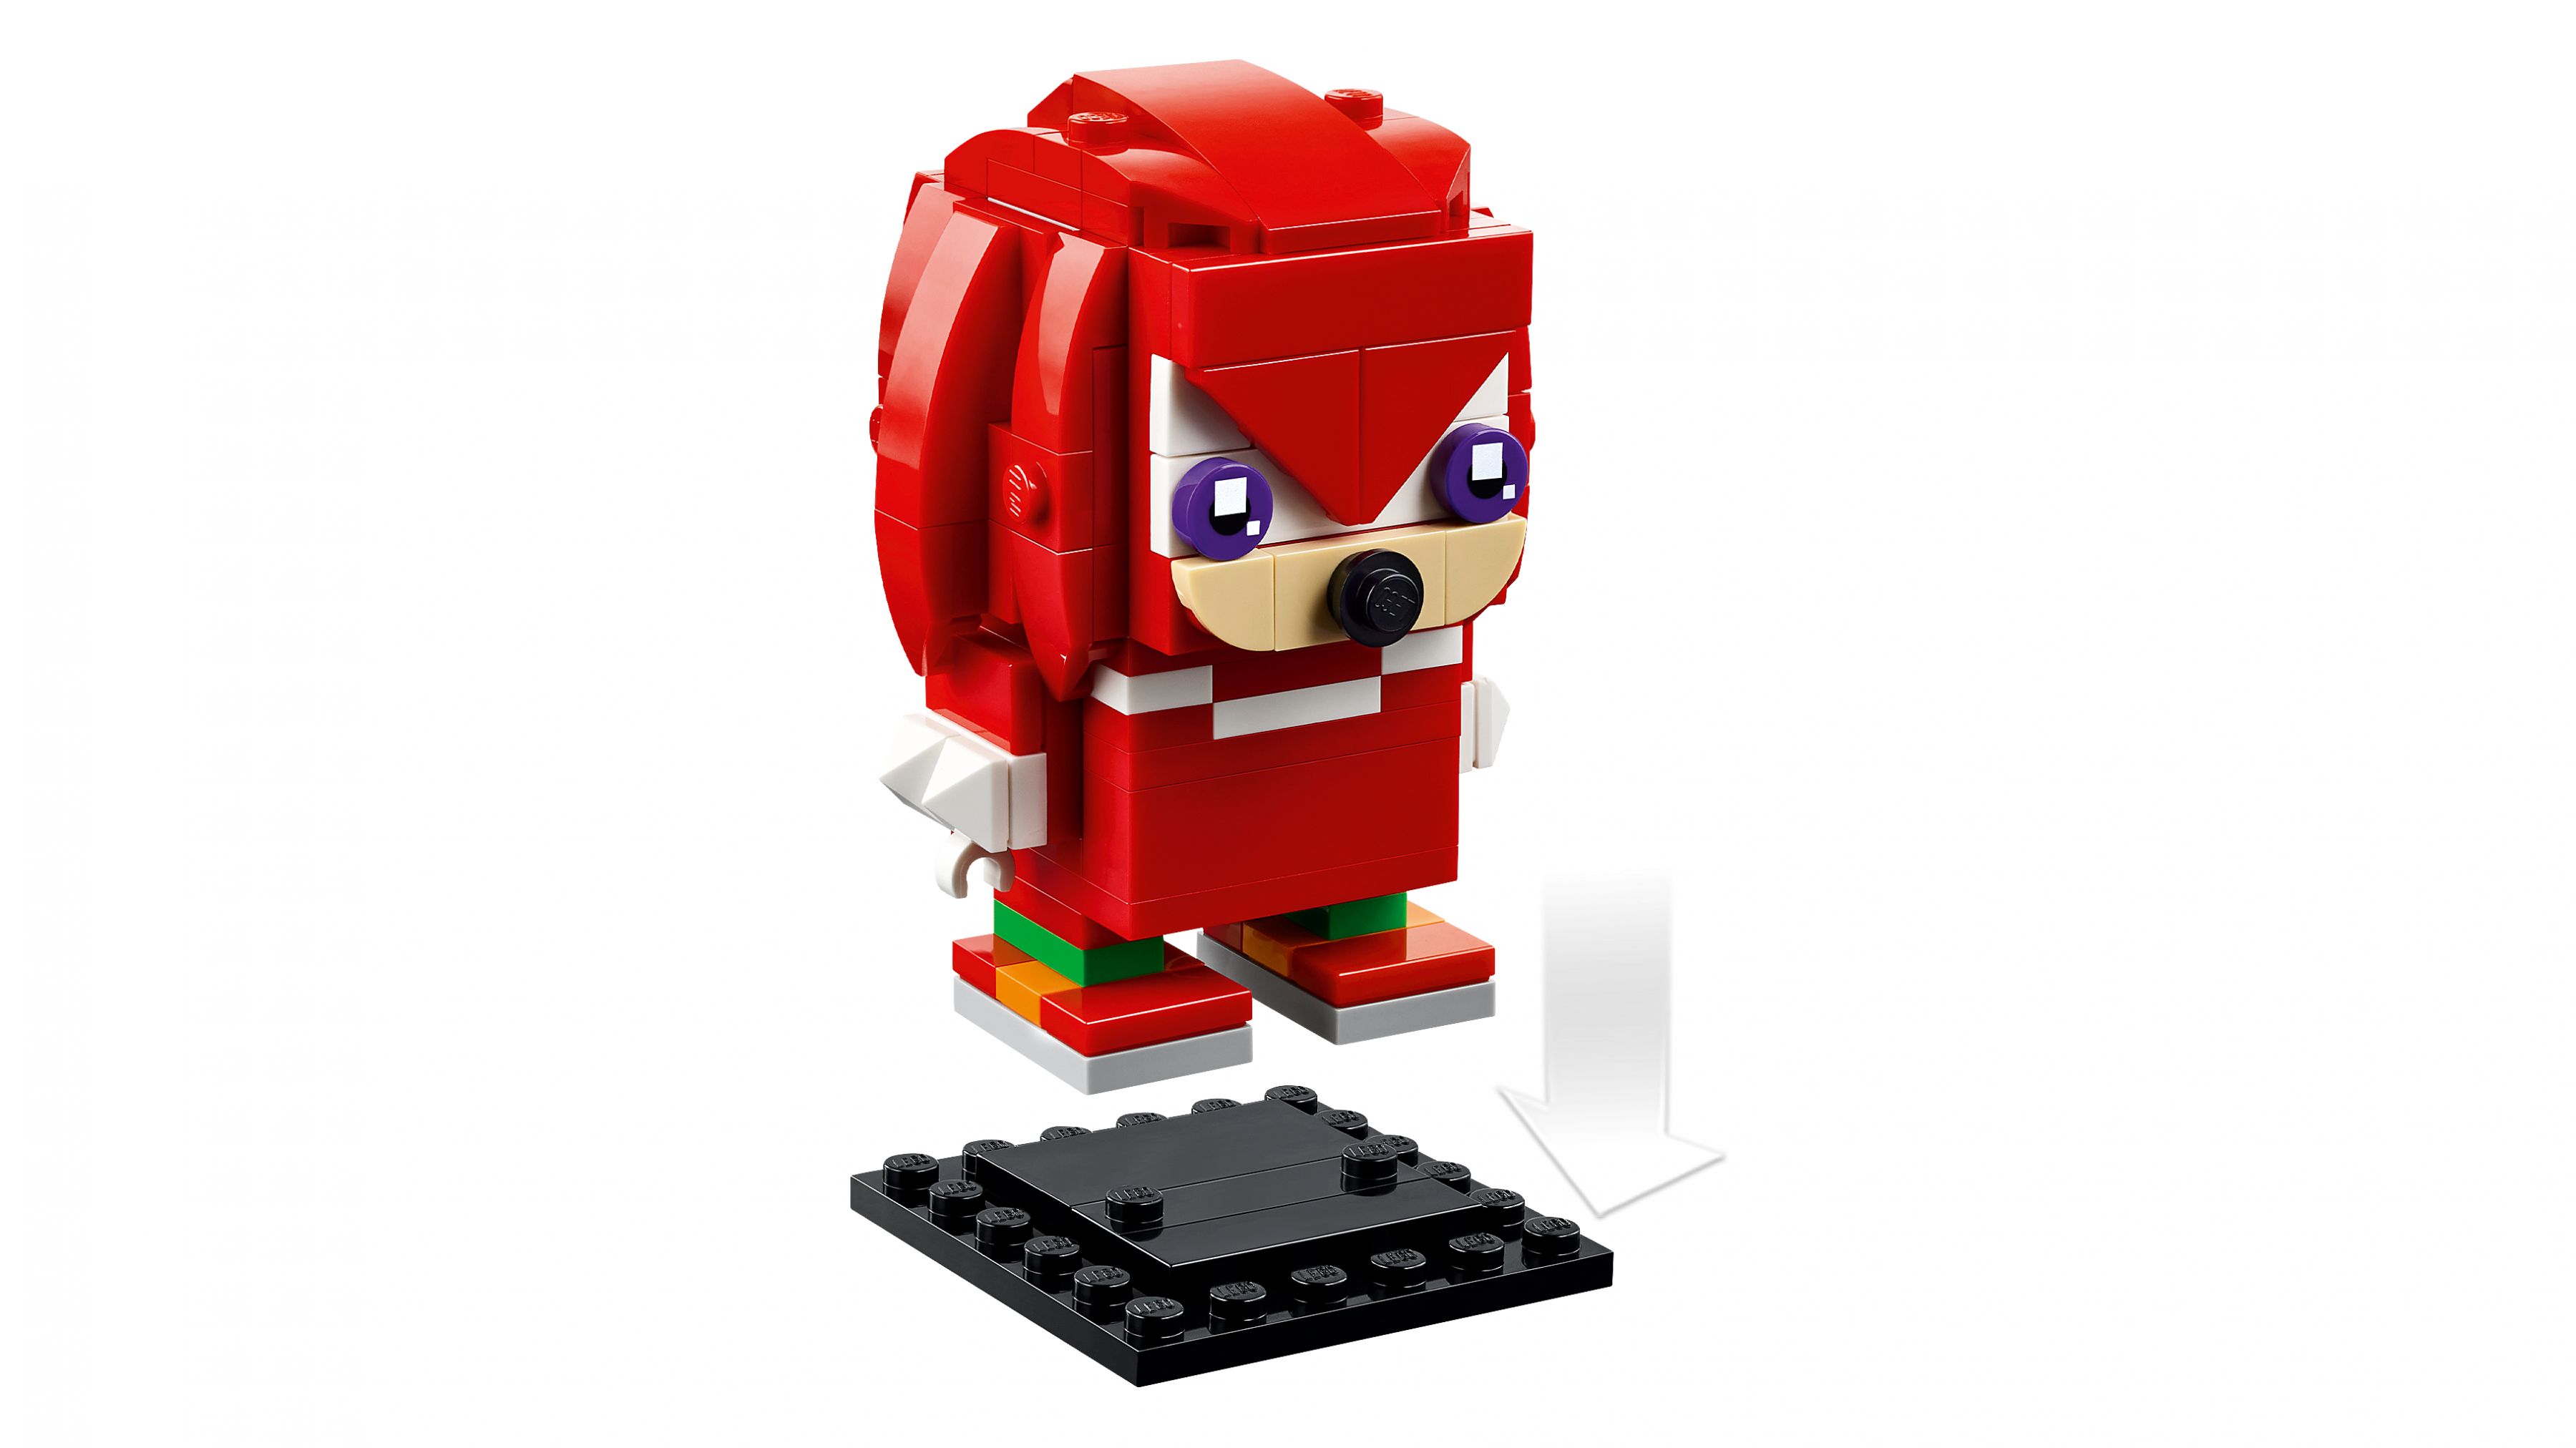 LEGO BrickHeadz 40672 Sonic the Hedgehog™: Knuckles & Shadow LEGO_40672_WEB_SEC02_NOBG.jpg